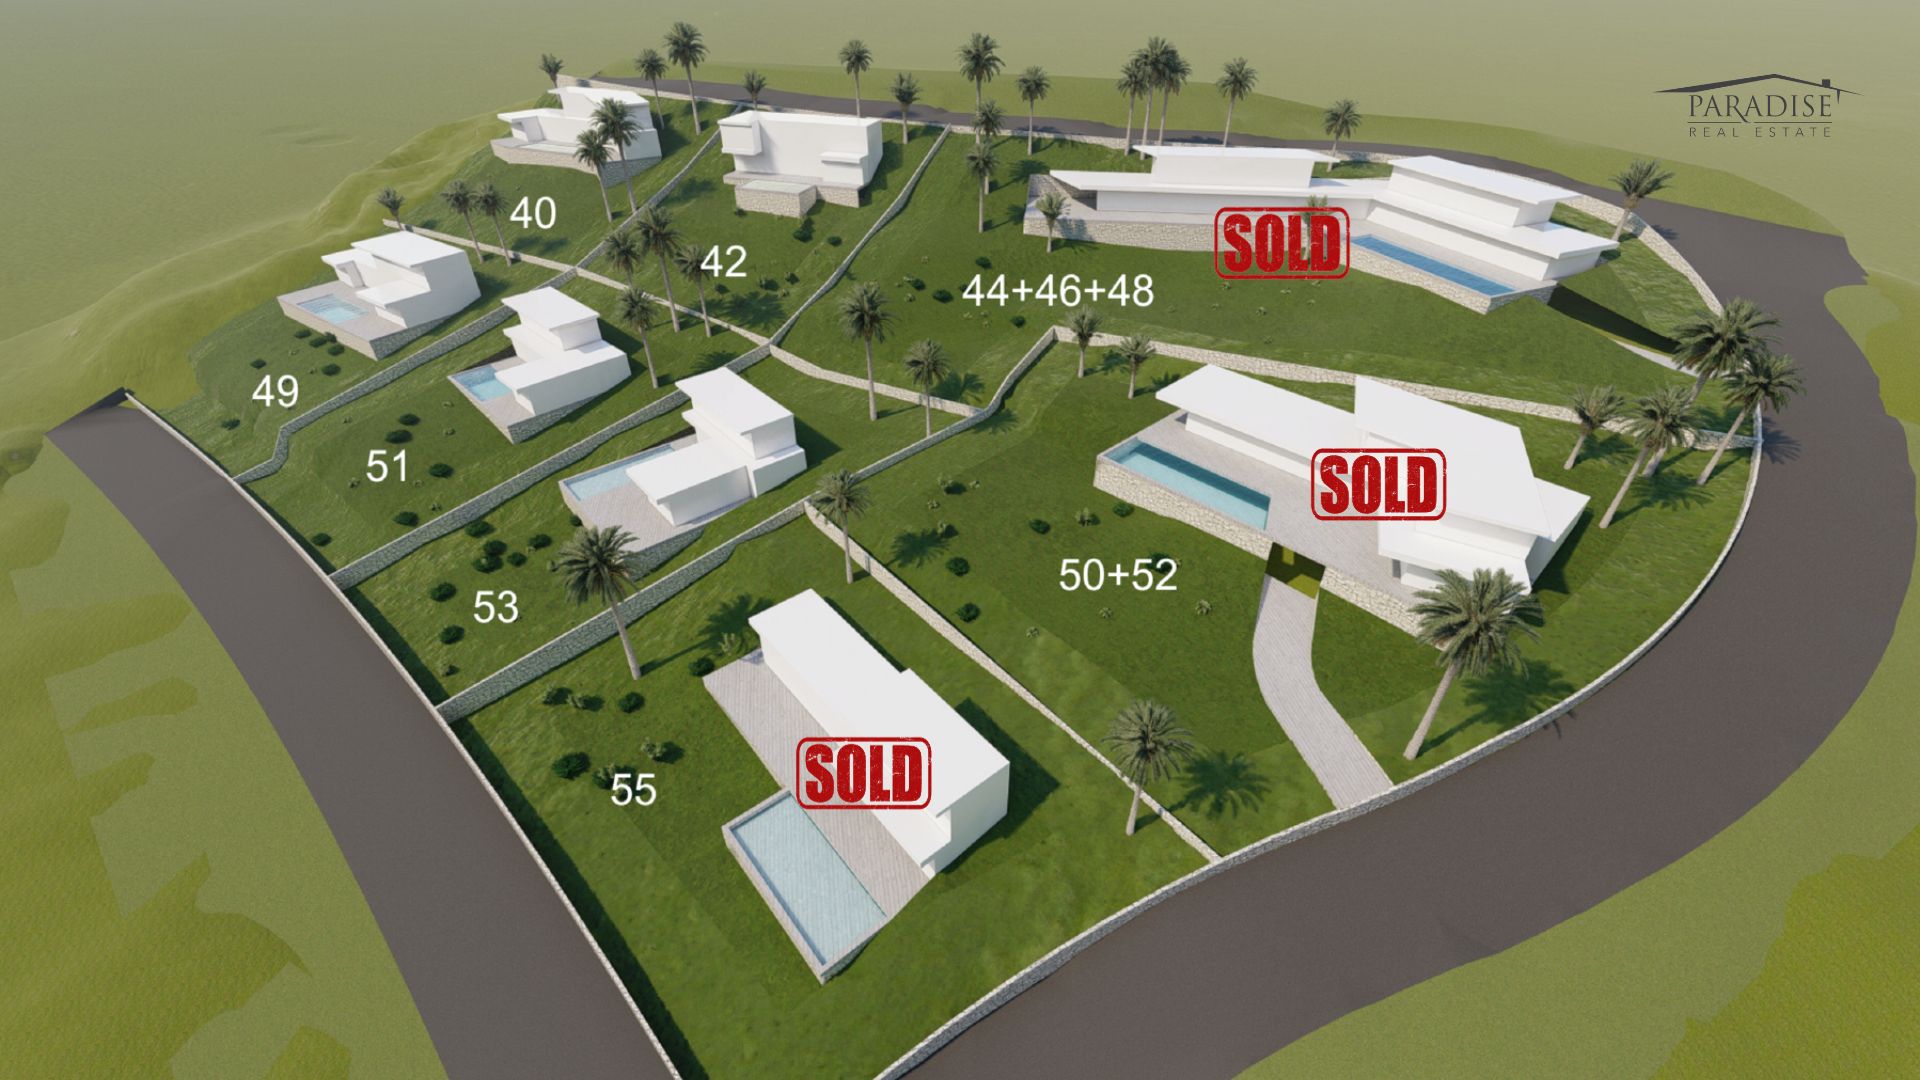 Terrains à bâtir à Monte Olimpo : personnalisez la maison de vos rêves et investissez dans l’immobilier exclusif 0Prix à partir de 525 k€ - 730 €